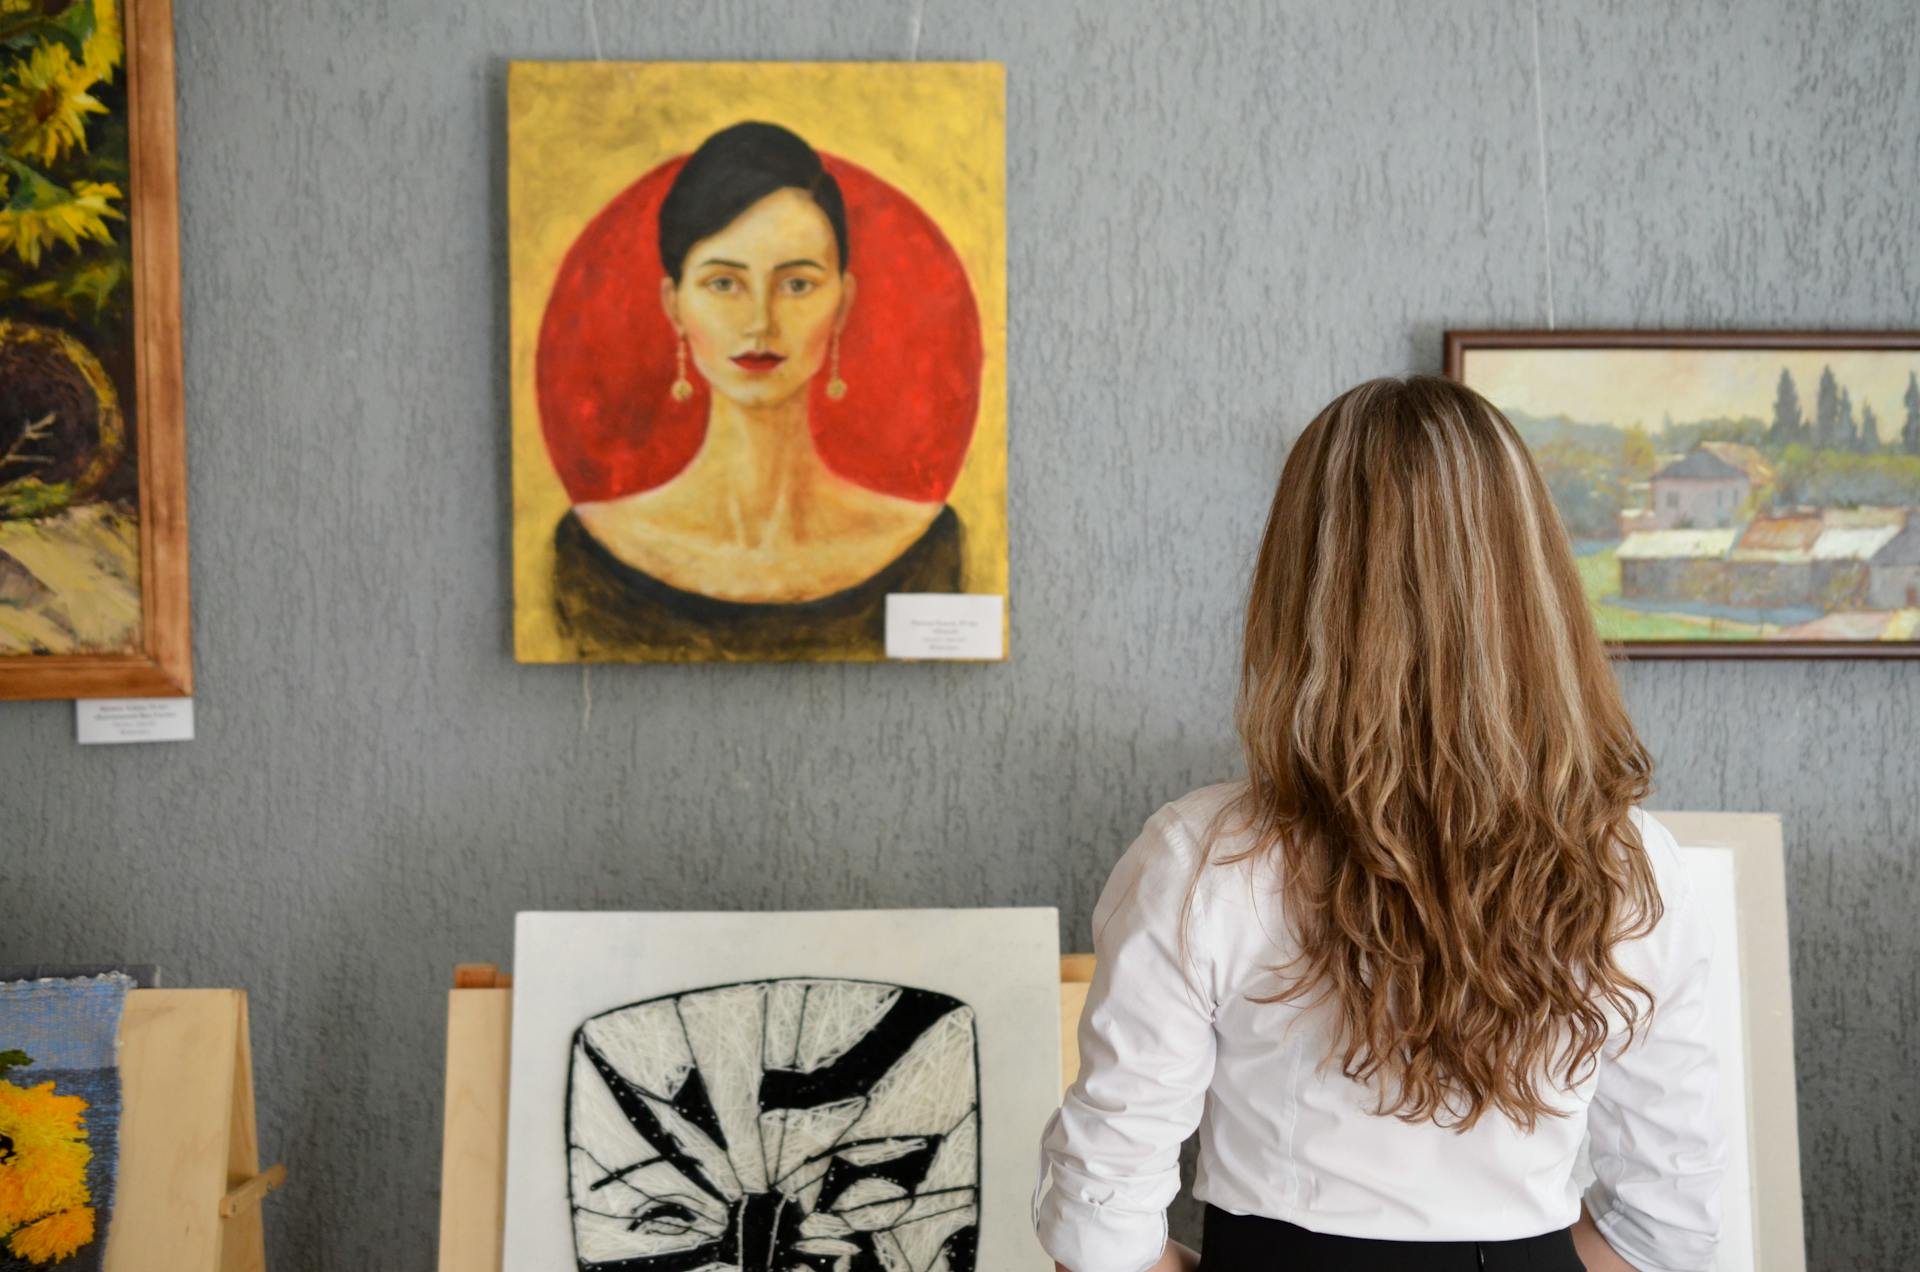 Eine junge Frau betrachtet die Gemälde an einer Wand | Quelle: Pexels